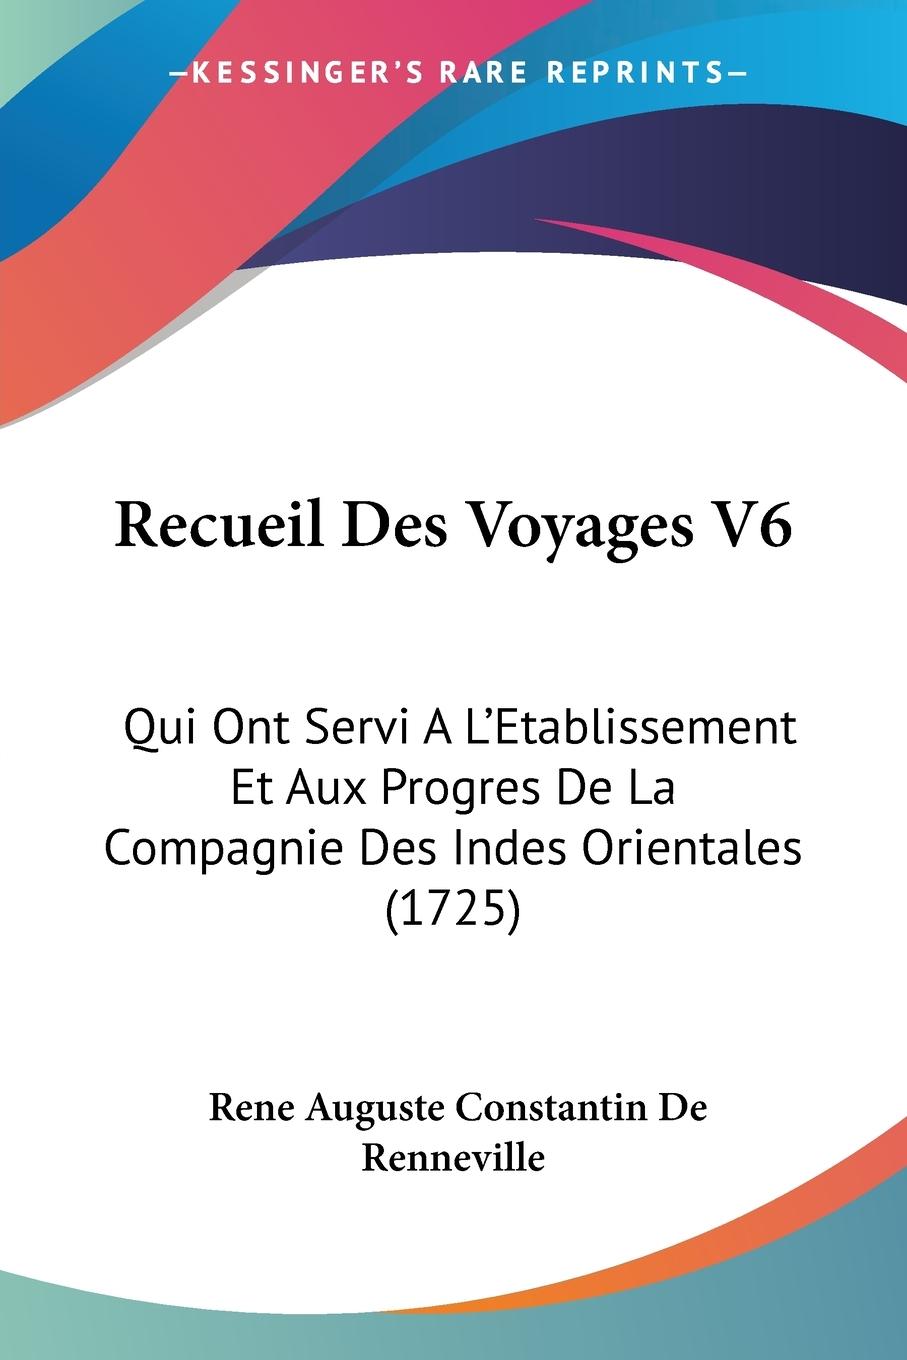 Recueil Des Voyages V6 - Renneville, Rene Auguste Constantin De